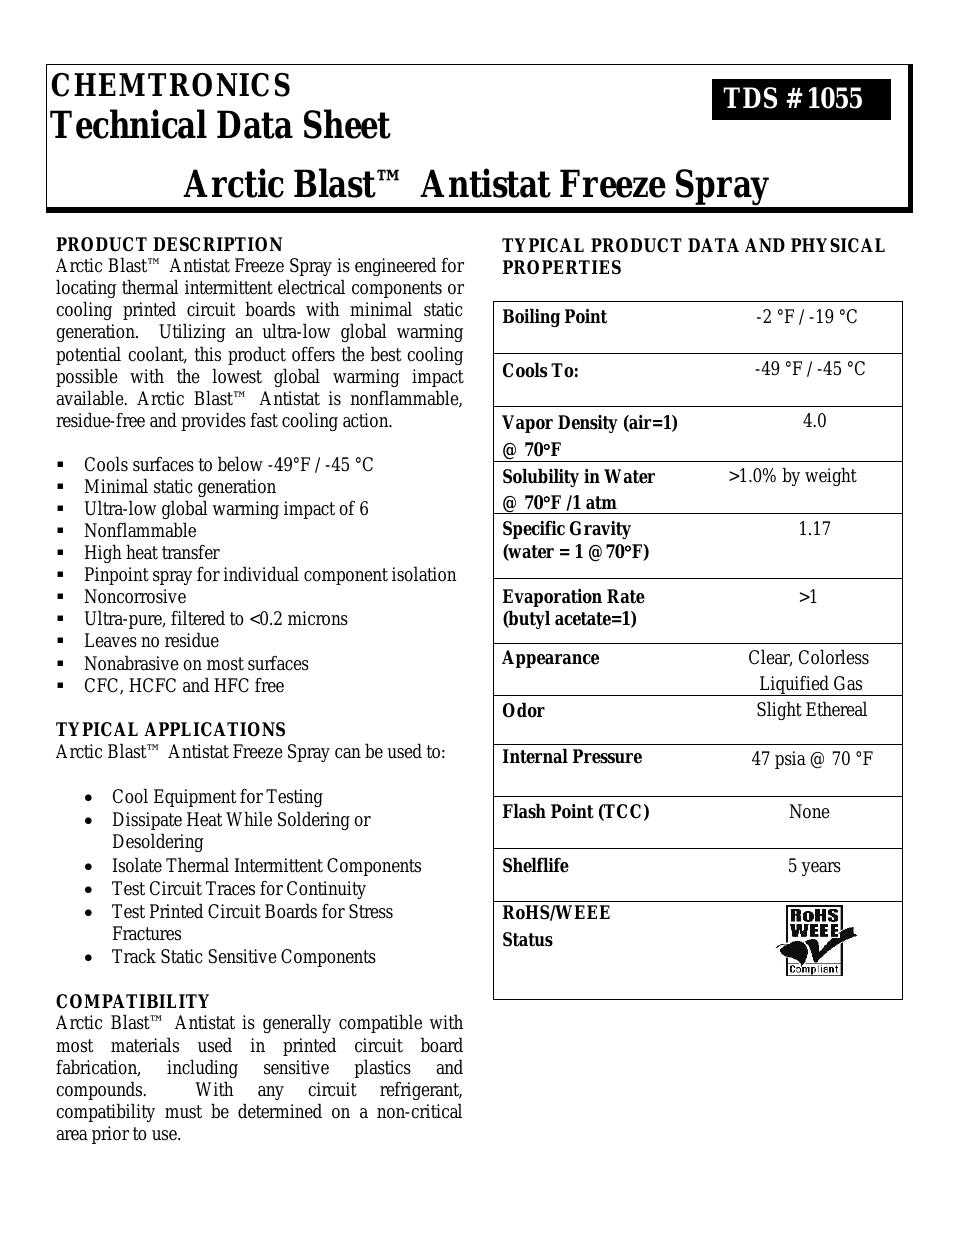 Arctic Blast Antistat ES1055